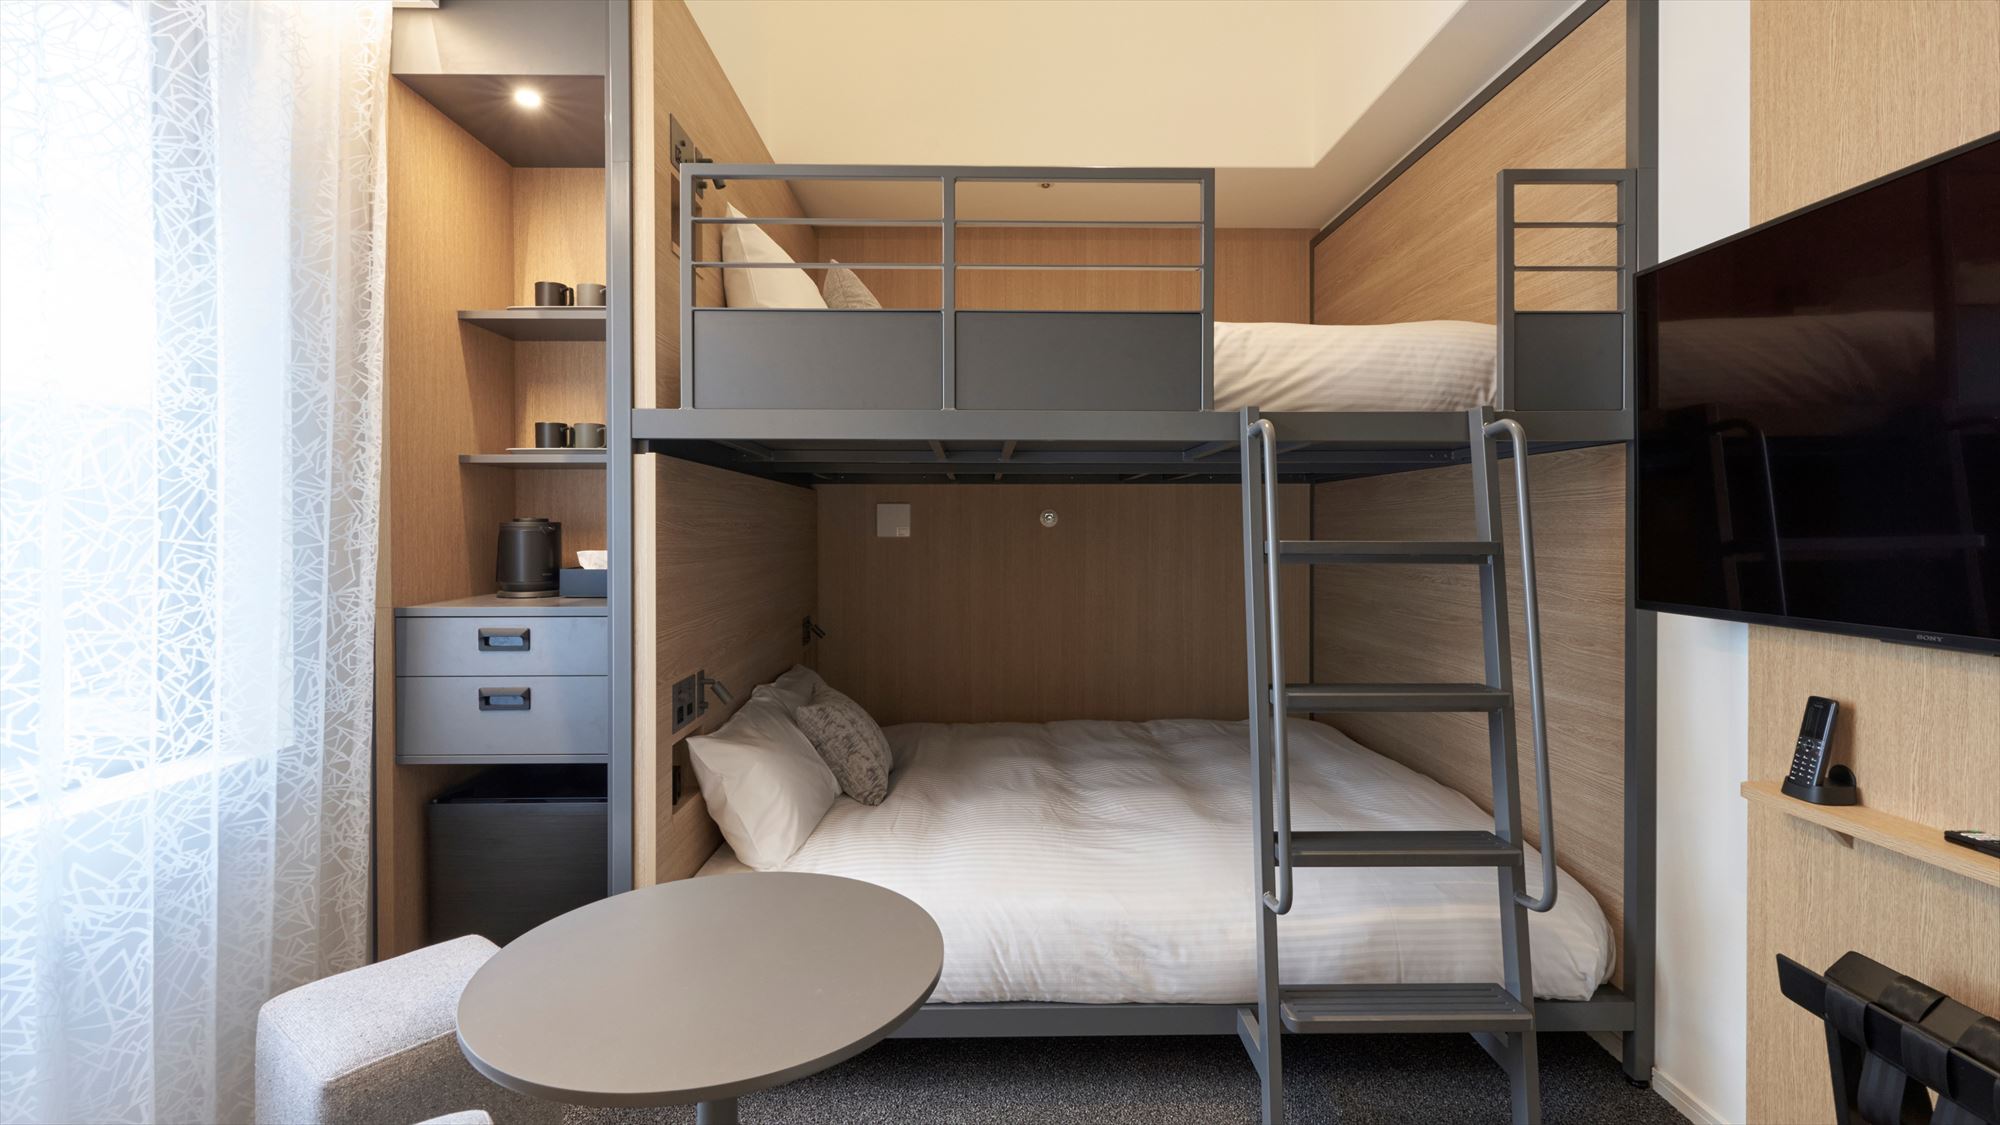 【2段ベッドクイーン】クイーンサイズ(160cm幅)の2段ベッドをご用意。4名様までご宿泊可能です